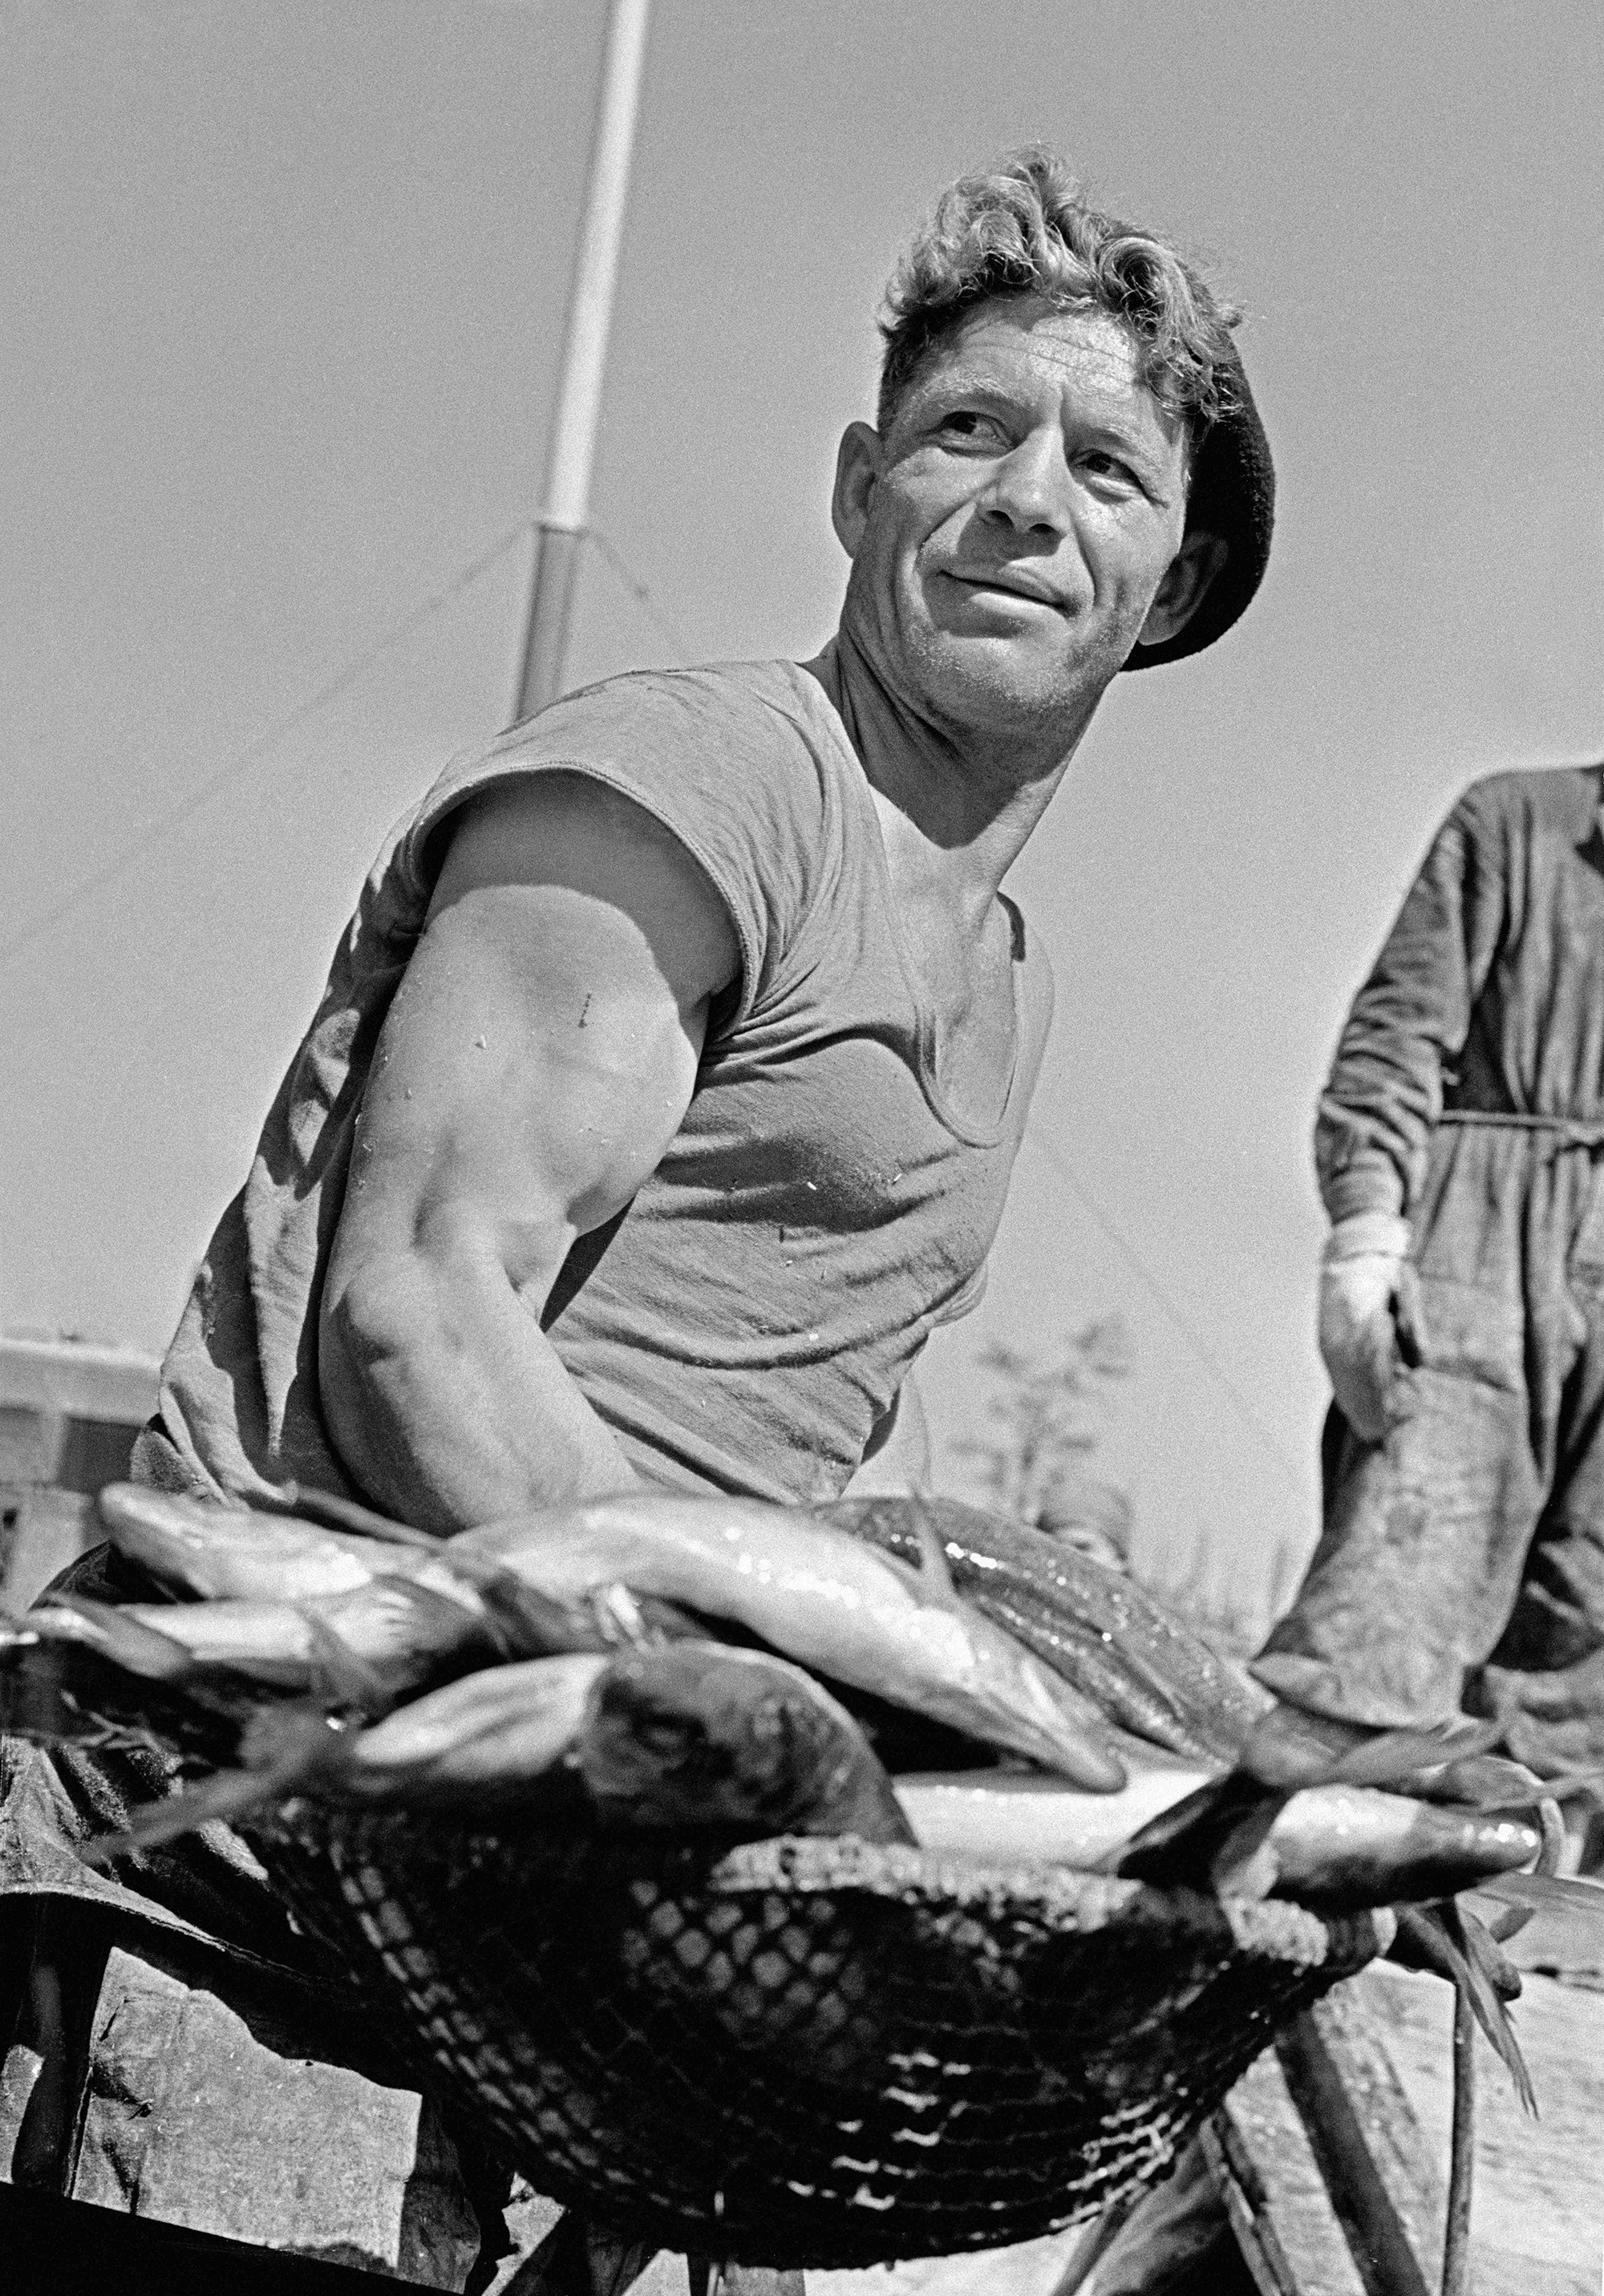 Освен фотографирањето на советските лидери, Абрамочкин отсекогаш сметал дека е исклучително важно на фотографиите да се овековечат животите на обичните луѓе. Тој бил еден од првите фоторепортери кои во репортажната фотографија внеле спонтани сцени. / Рибари, Атрахањ, 1965